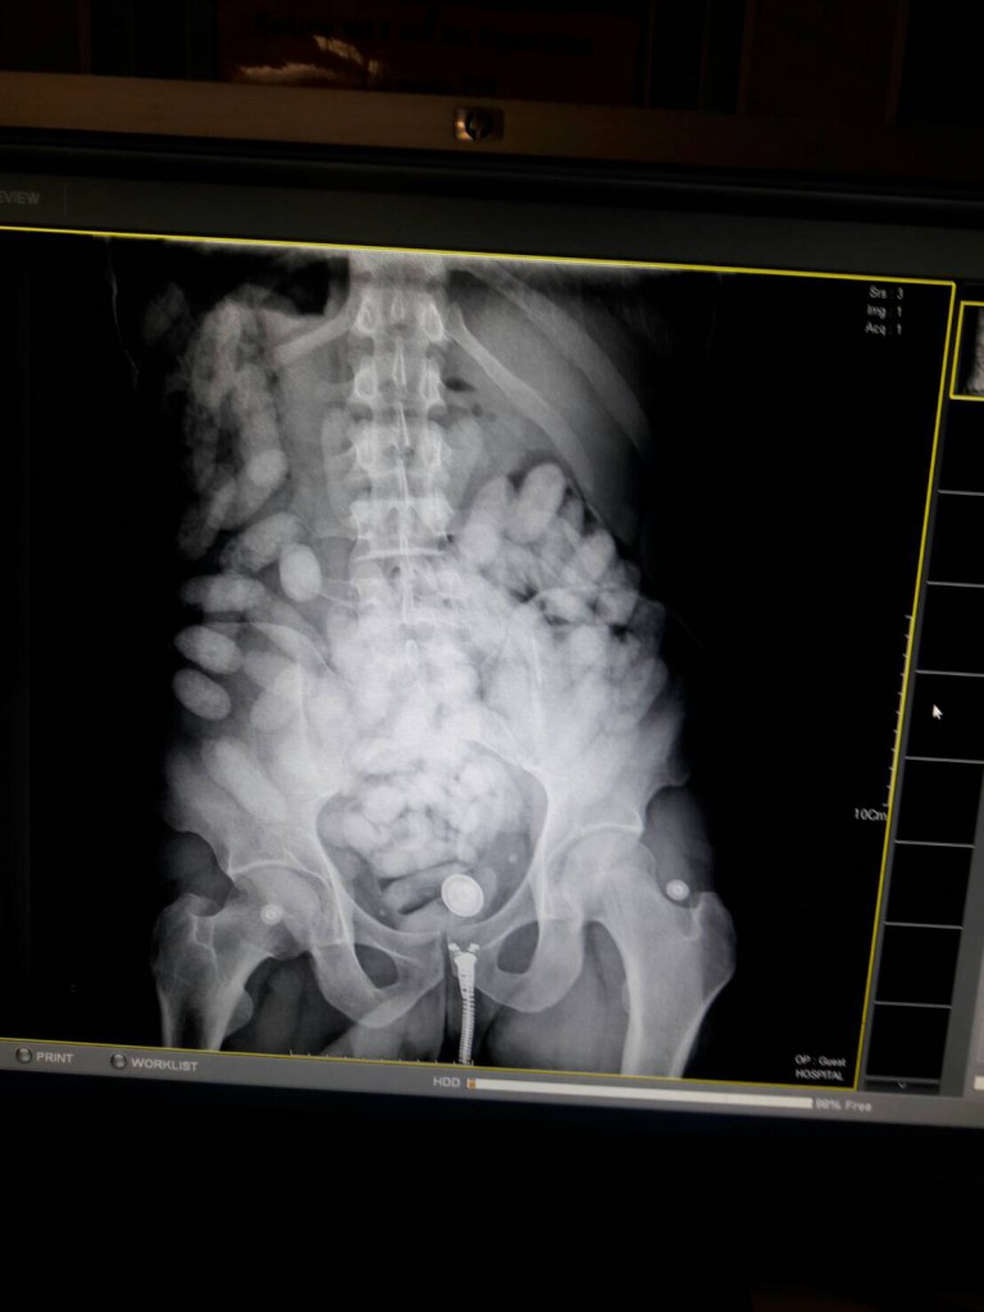 Imagem dos raios x do corpo do brasileiro detido na Tailândia que mostra as cápsulas usadas para transportar a droga  (Foto: Reprodução/Thai Drug Police)